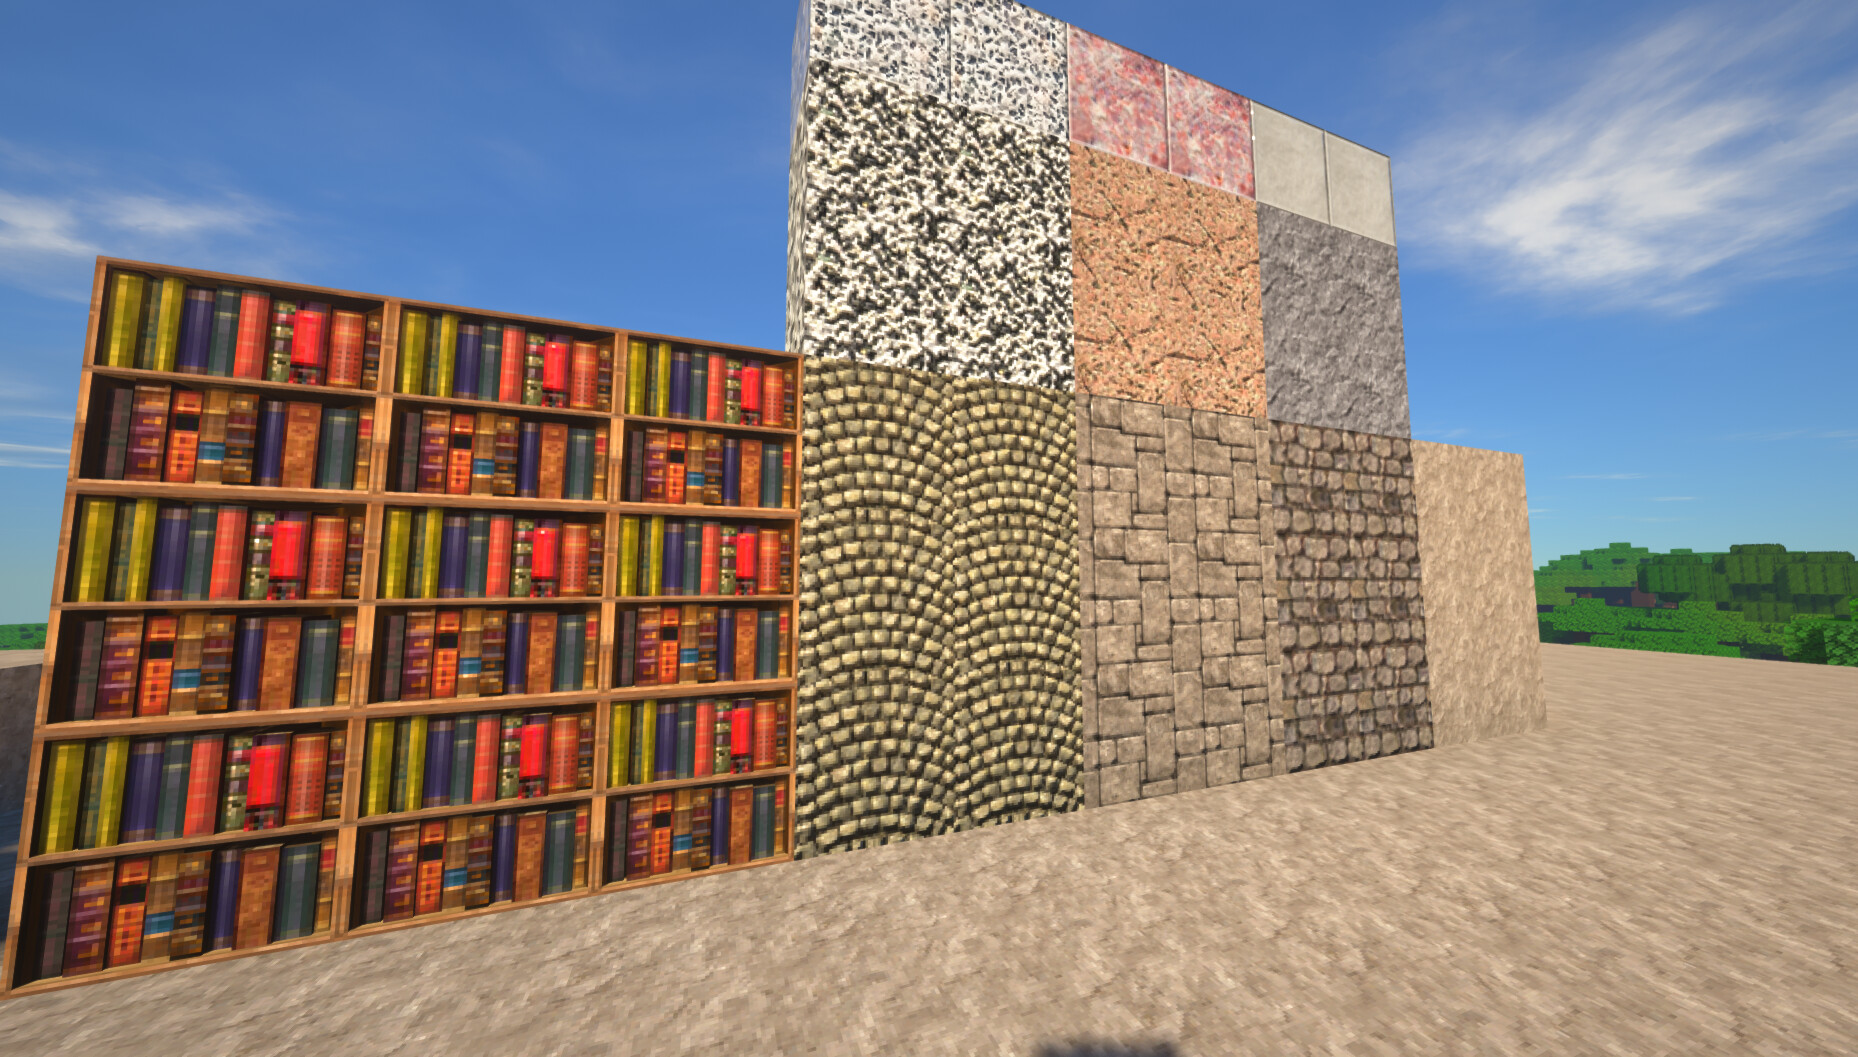 Better Bookshelves - Minecraft Resource Pack